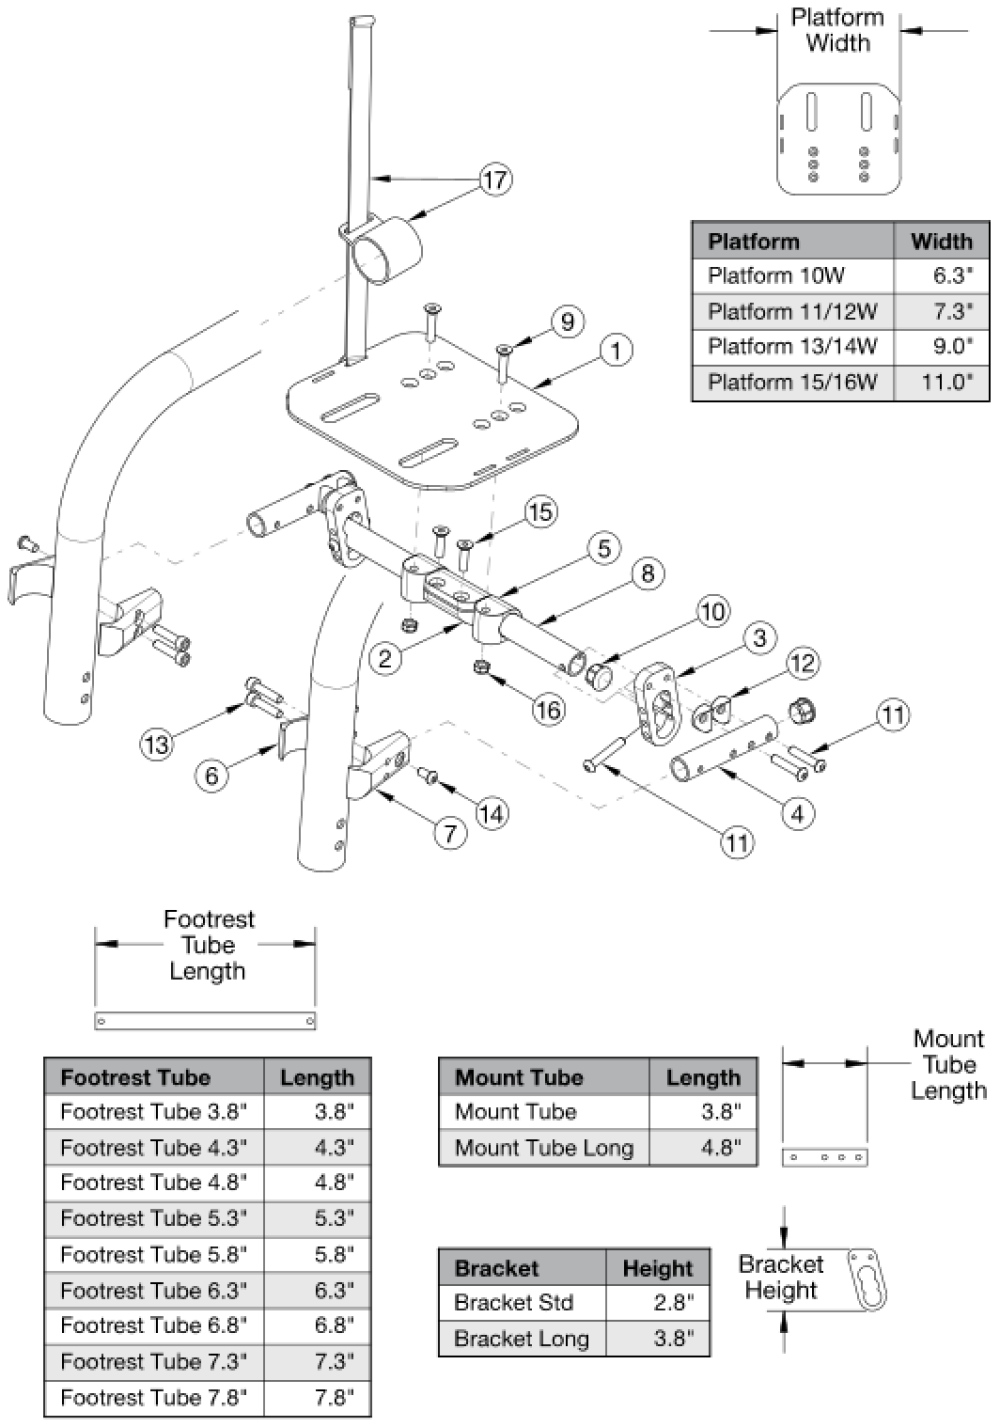 Clik High Mount Angle Adjustable Flip Under Footrest parts diagram